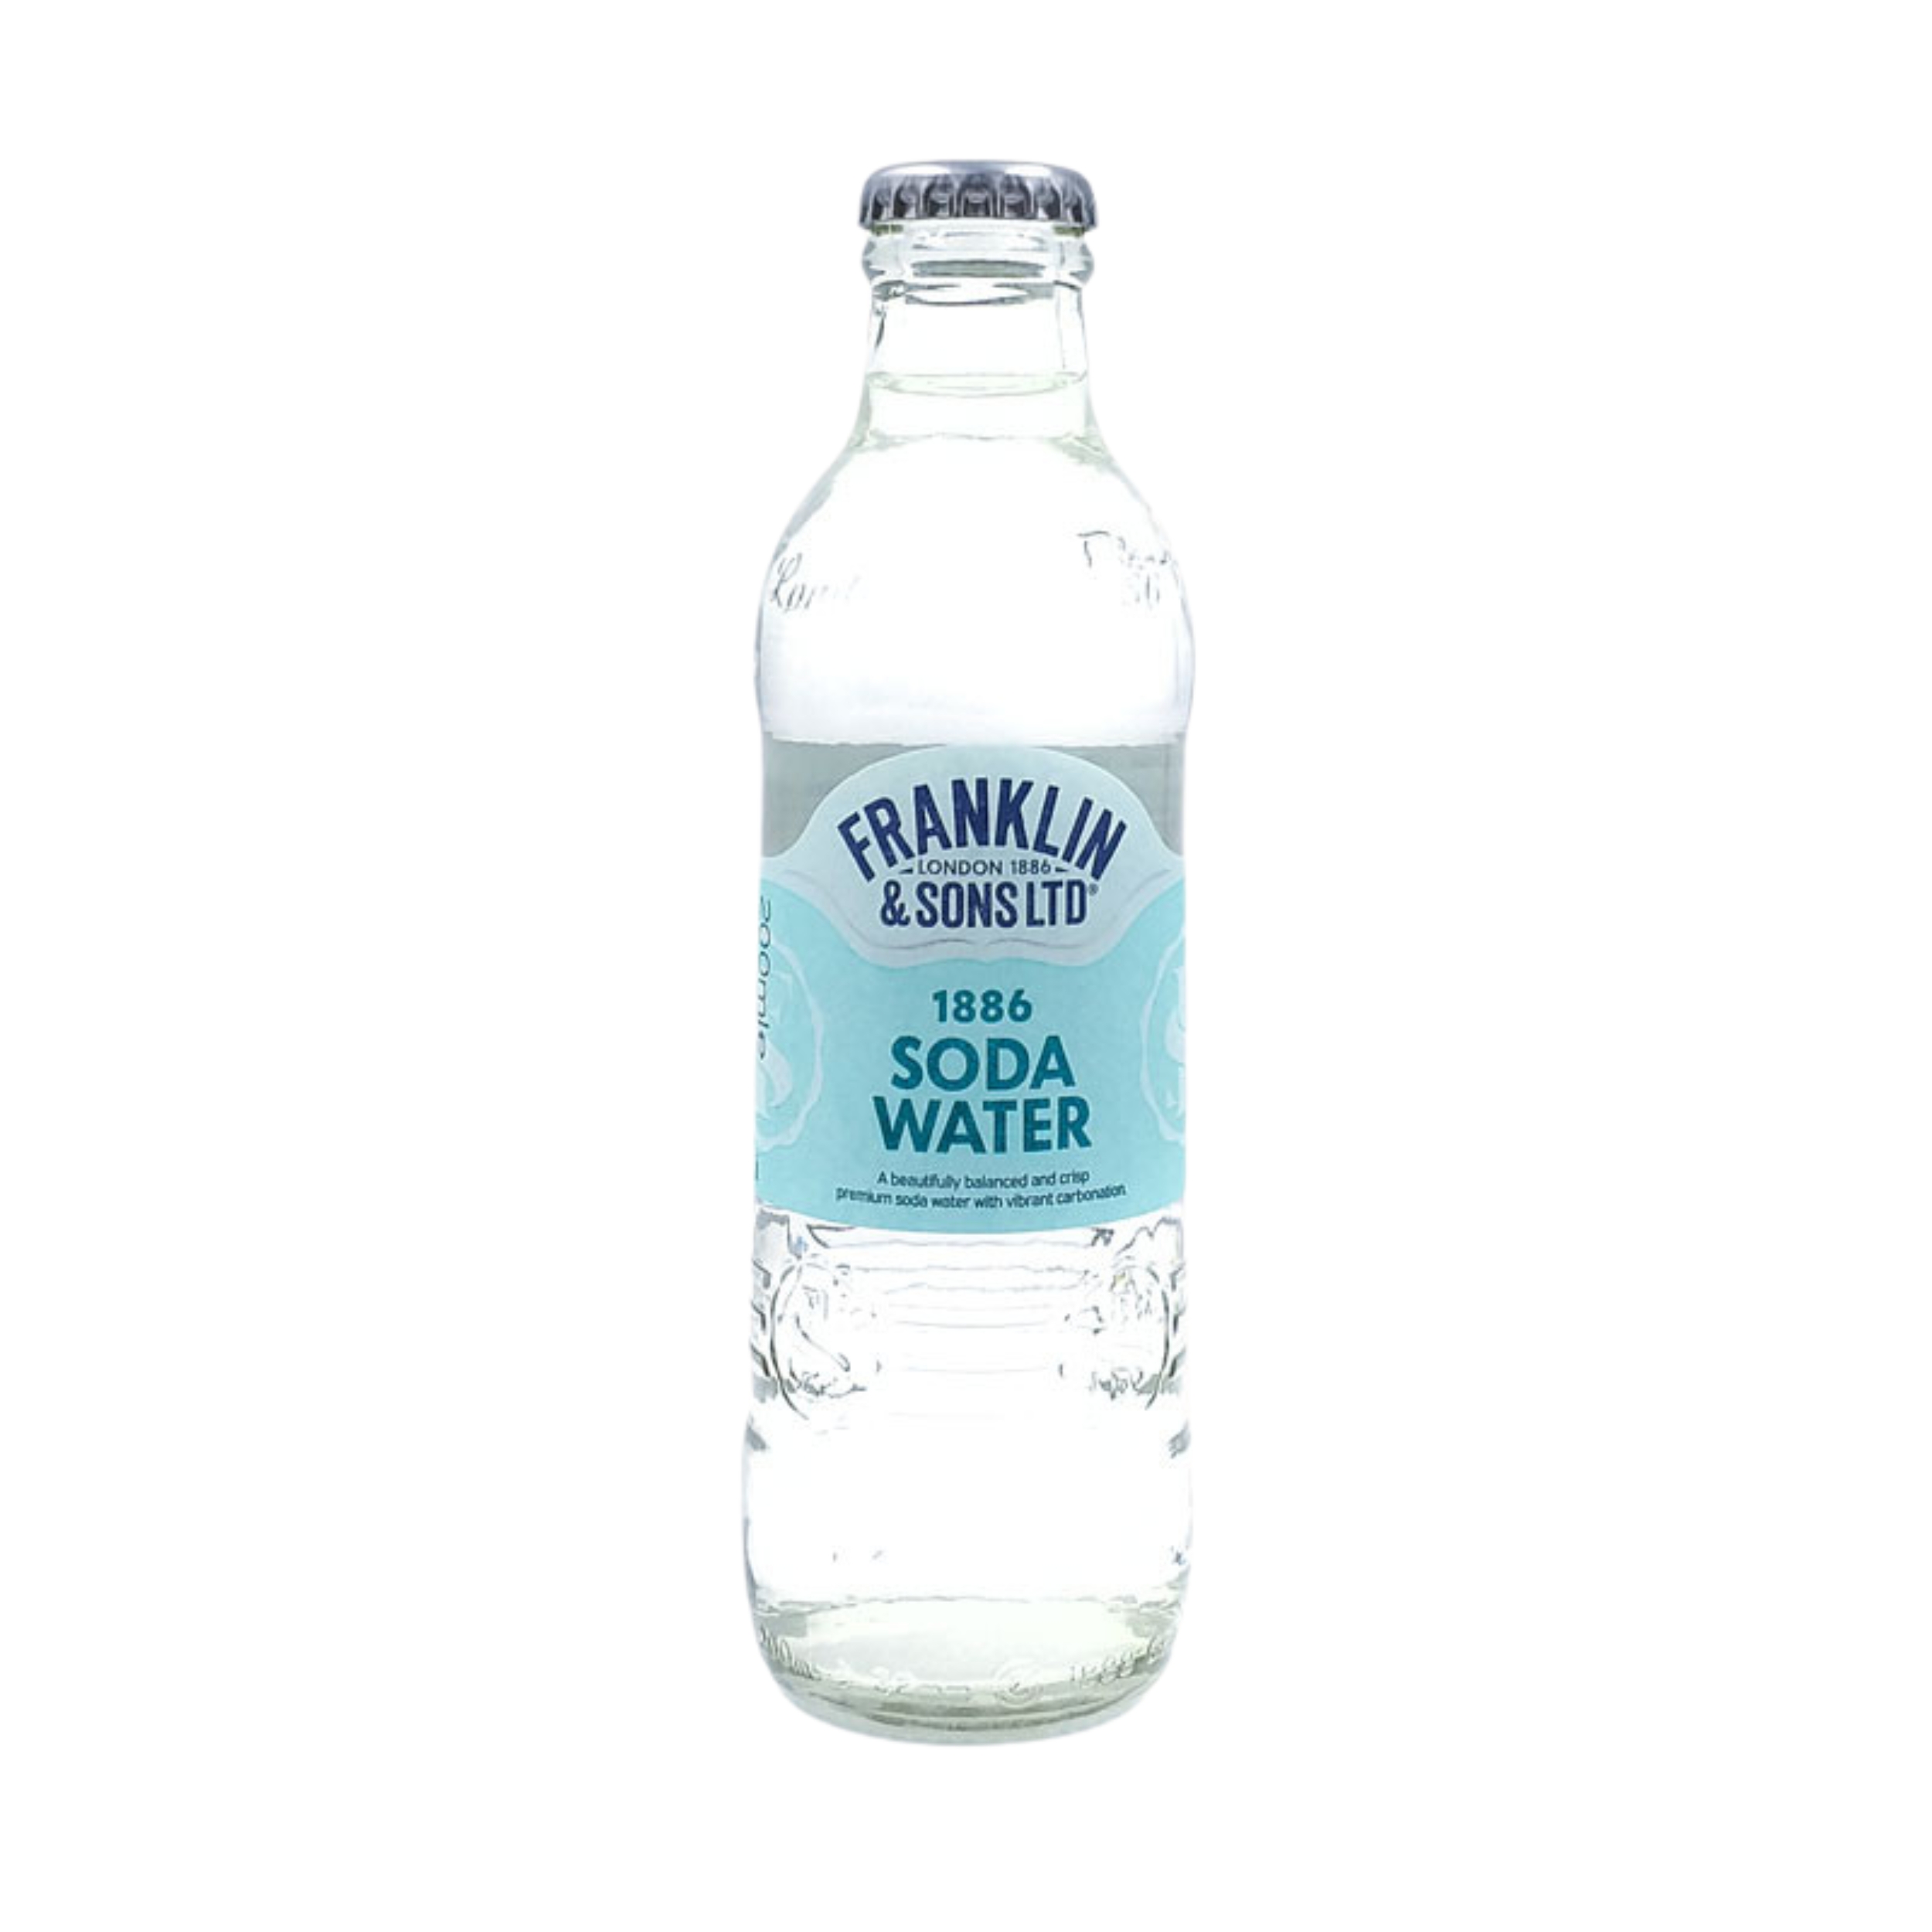 Imagen de botella de agua de soda de la marca Franklin and Sons